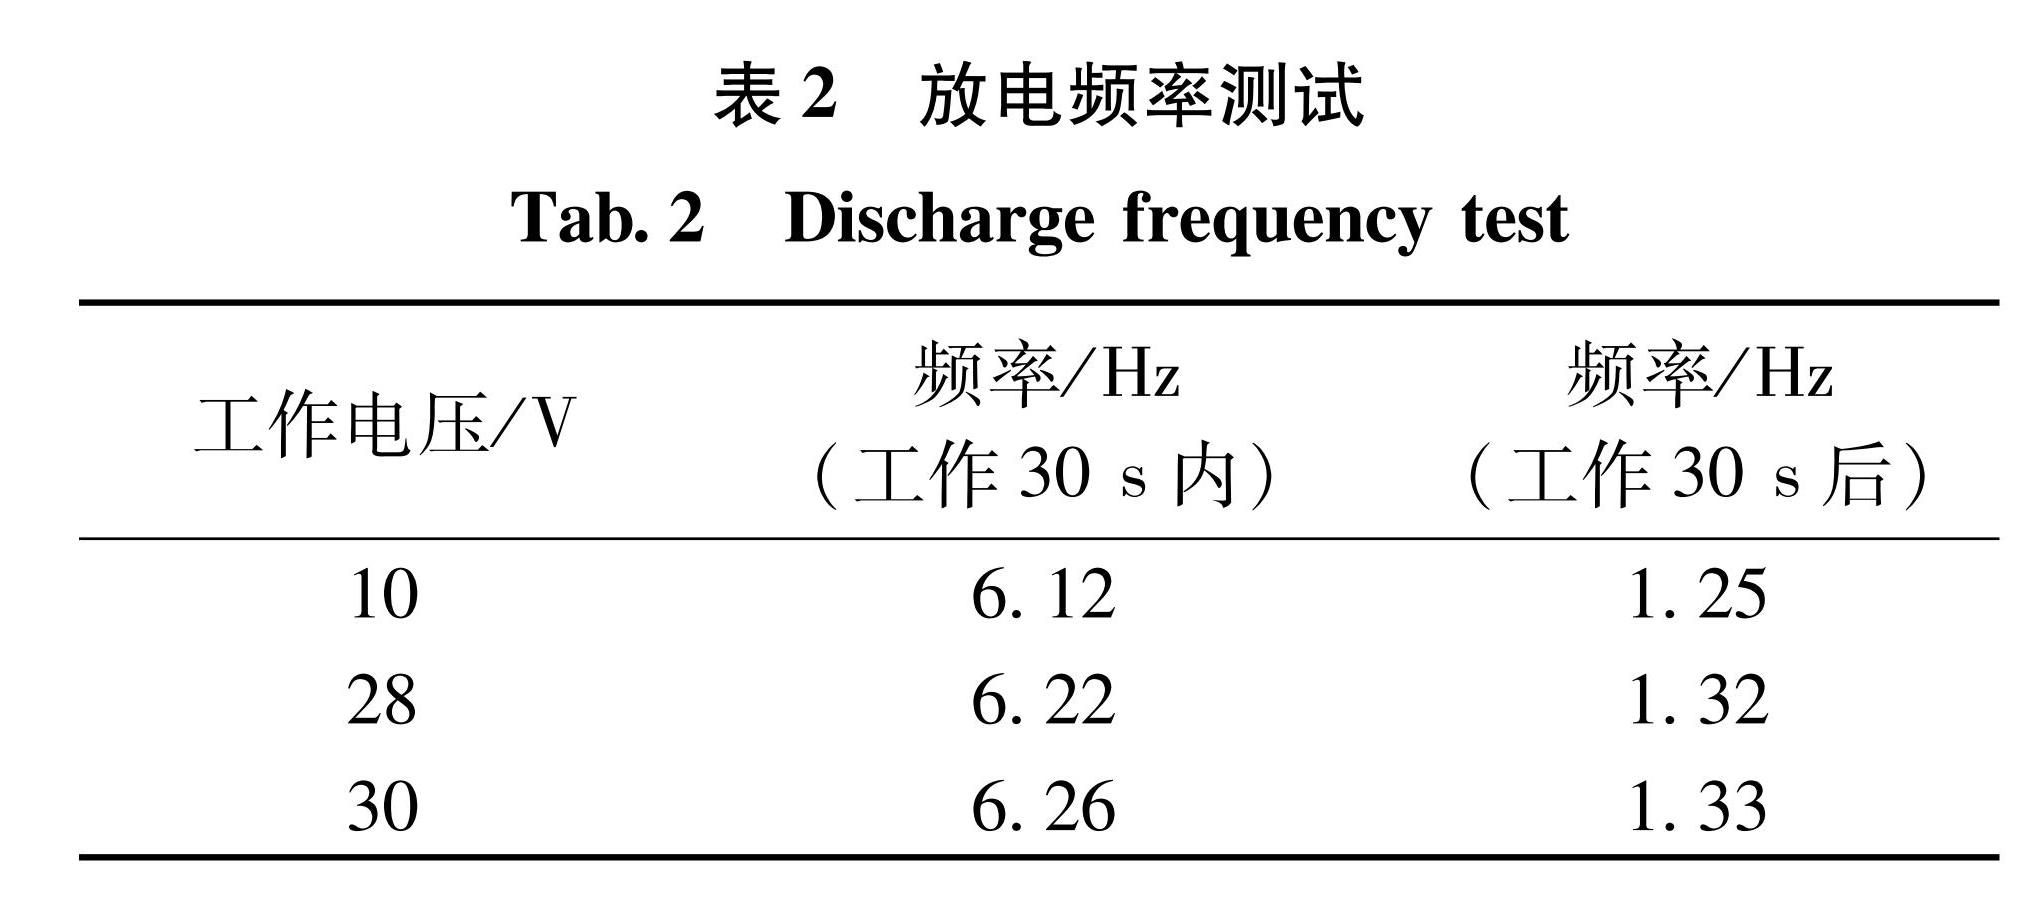 表2 放电频率测试<br/>Tab.2 Discharge frequency test